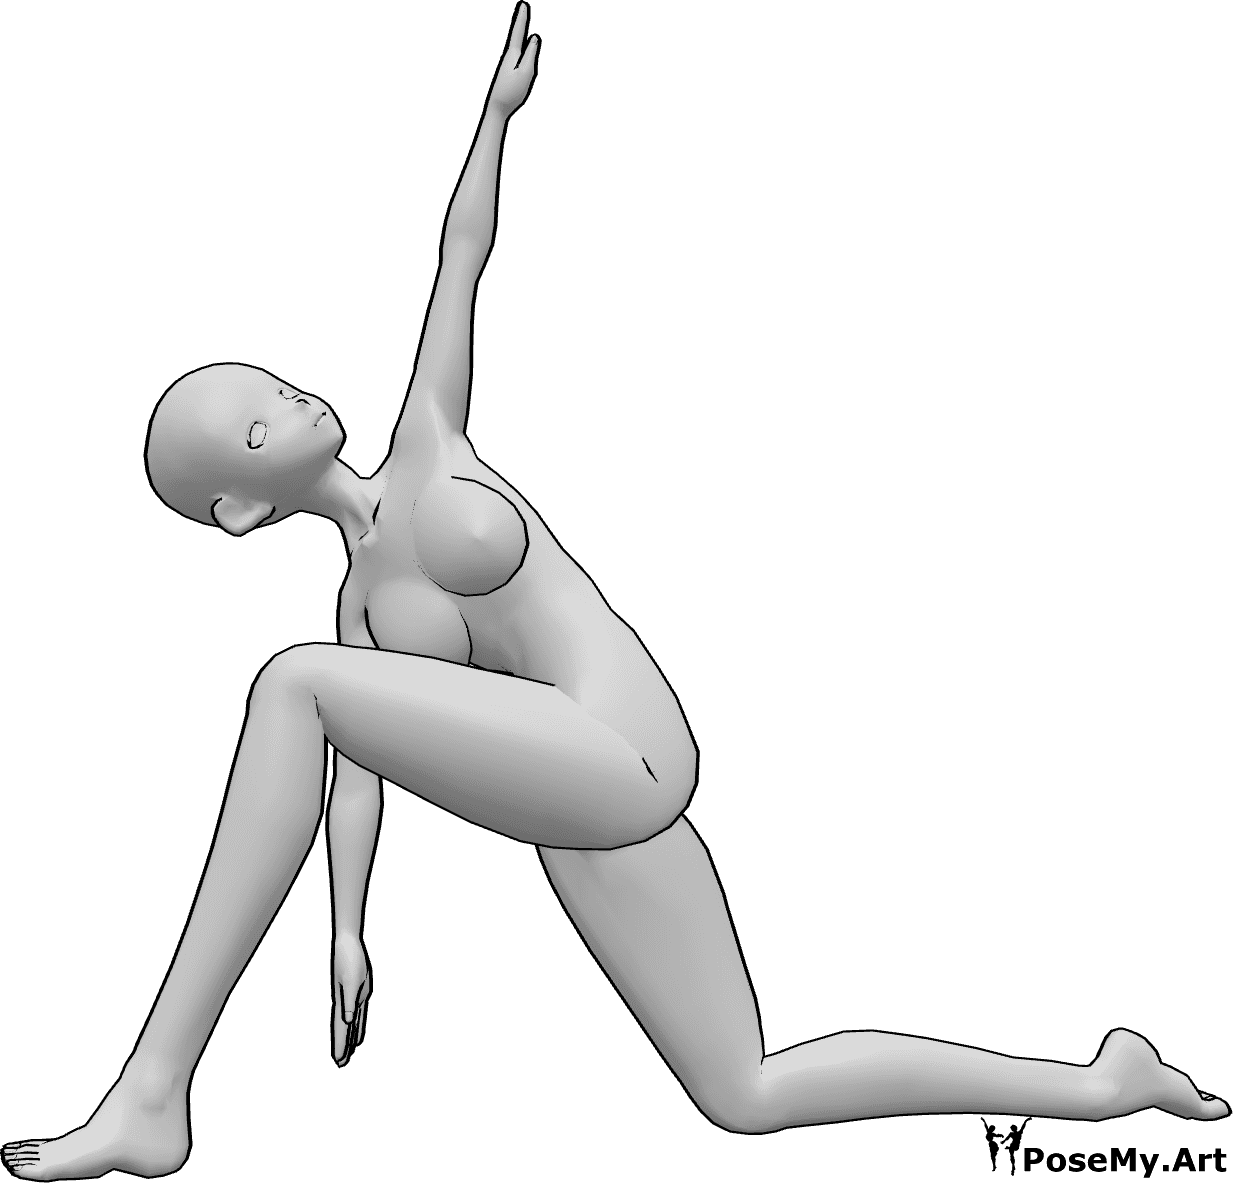 Referencia de poses- Anime de rodillas postura de yoga - Mujer anime está haciendo yoga, arrodillada y estirándose, levantando la mano izquierda y mirando hacia arriba